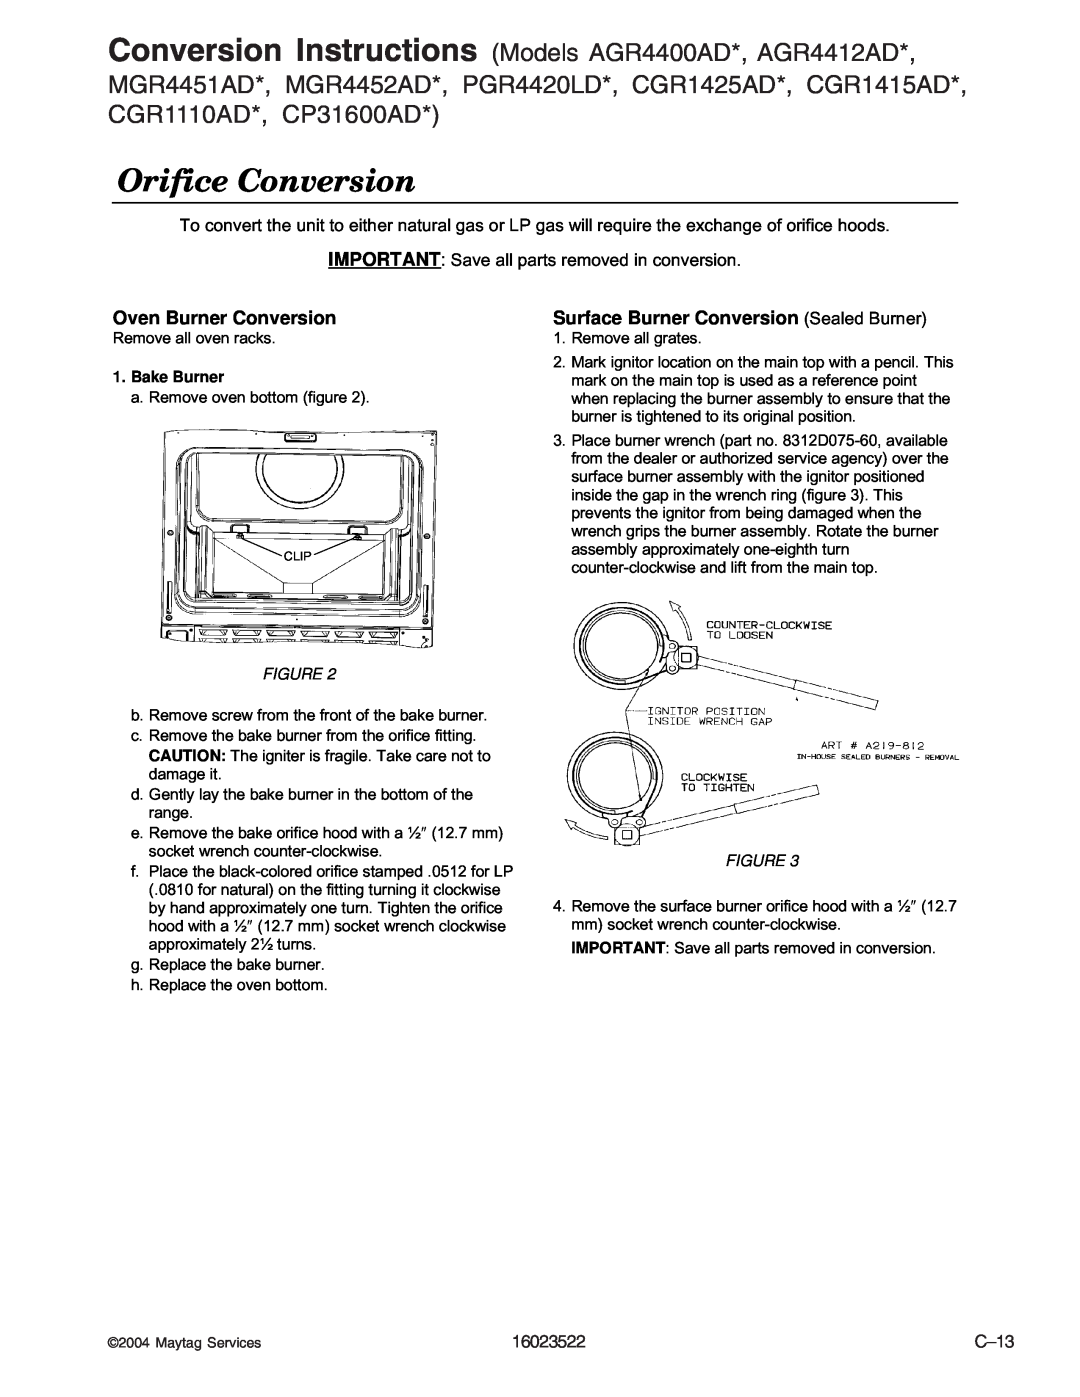 Maytag CGL1100ADQ/W manual Orifice Conversion, Oven Burner Conversion, Surface Burner Conversion Sealed Burner, Bake Burner 